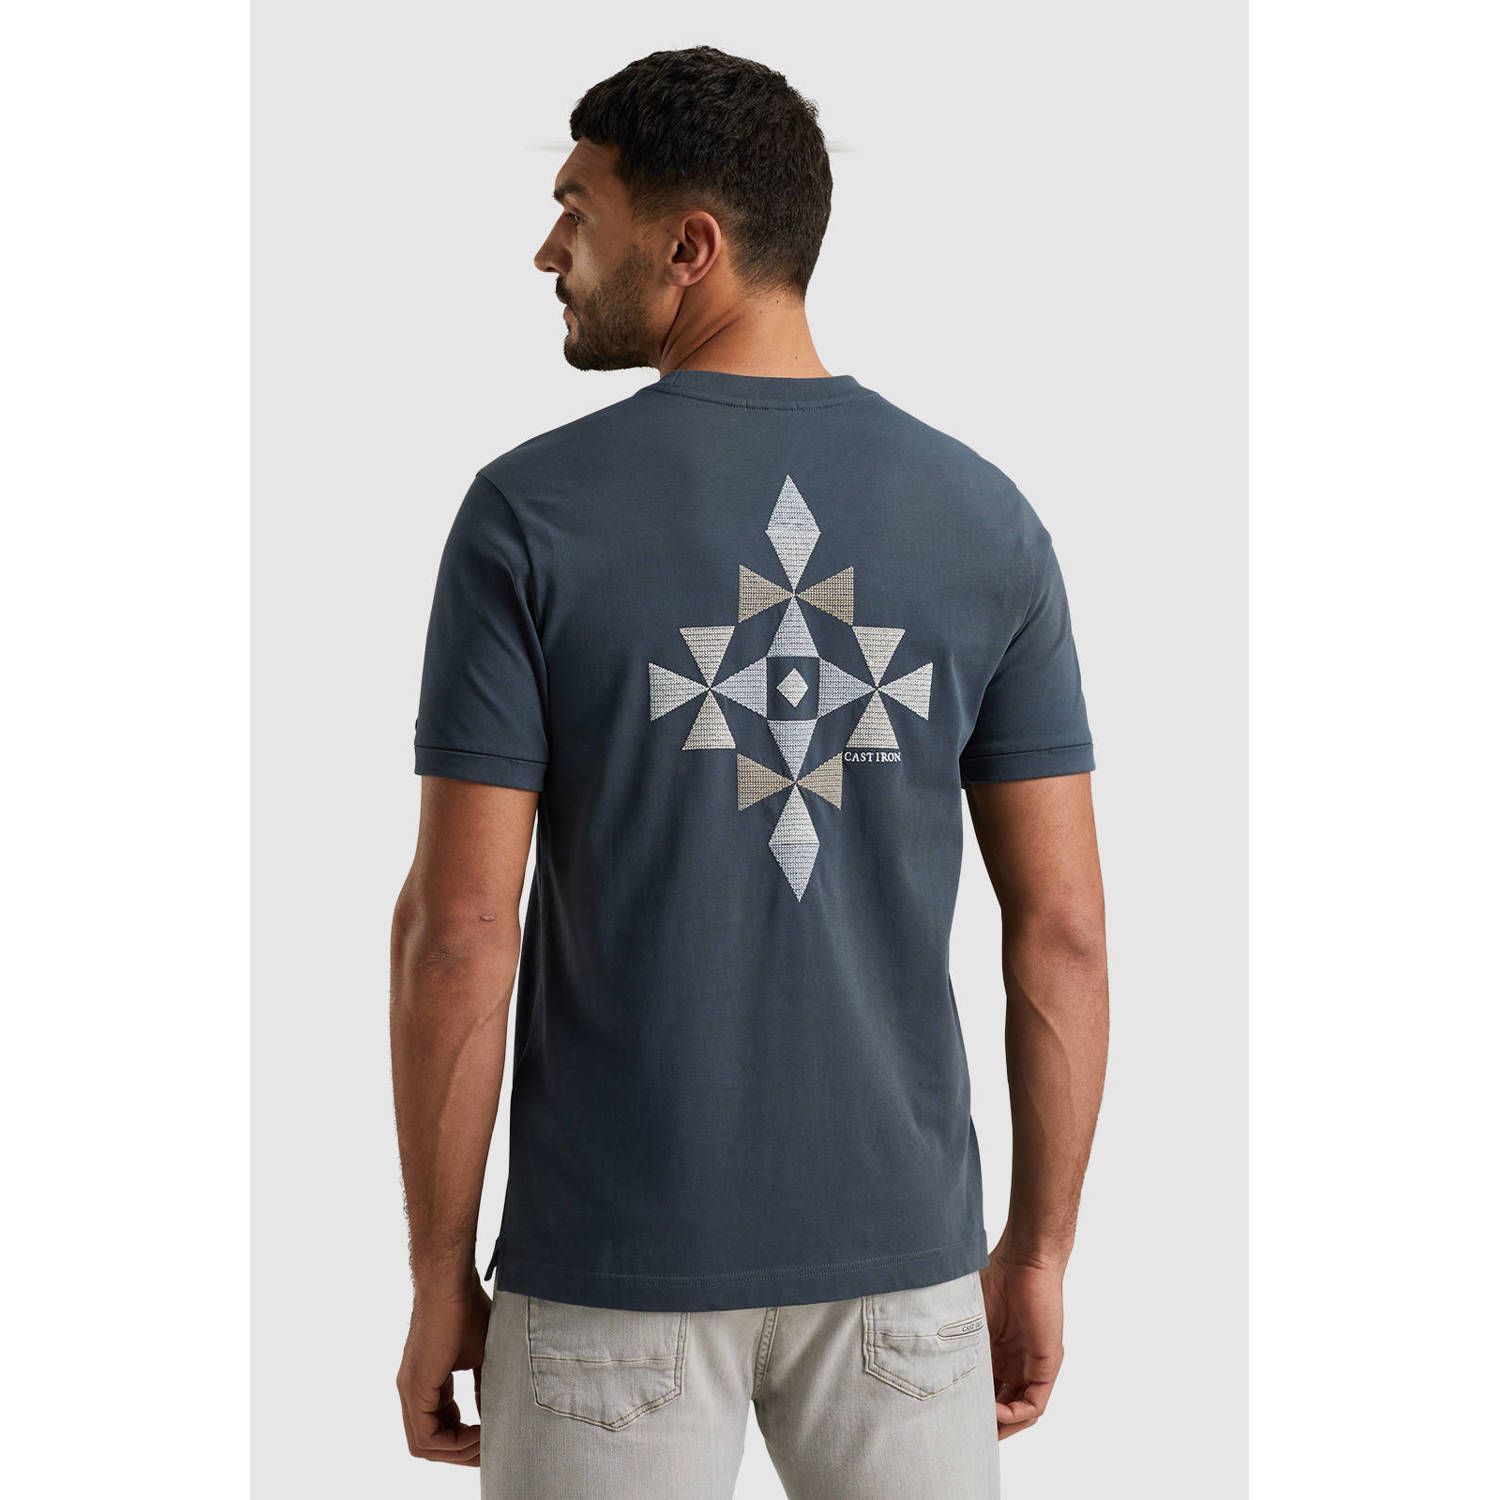 Cast Iron T-shirt met backprint en borduursels blauw